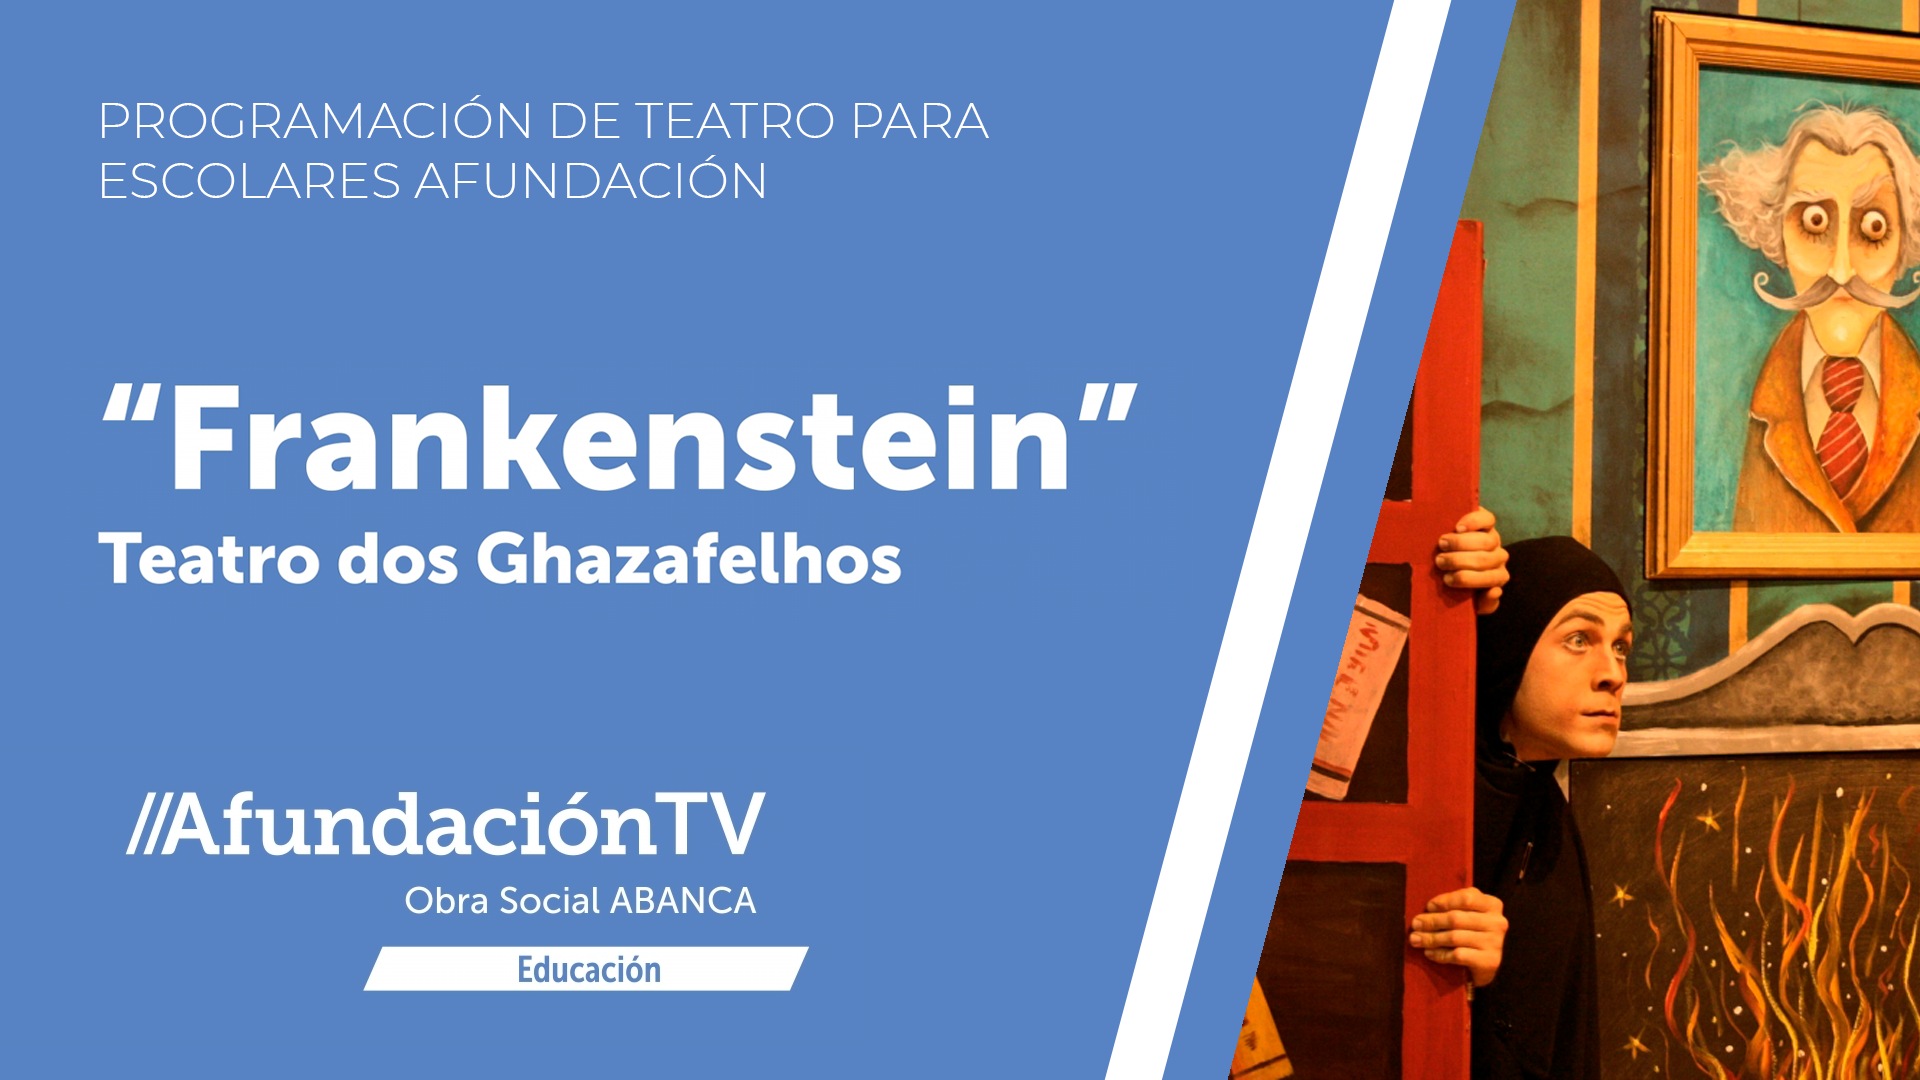 Teatro dos Ghazafelhos: “Frankenstein”